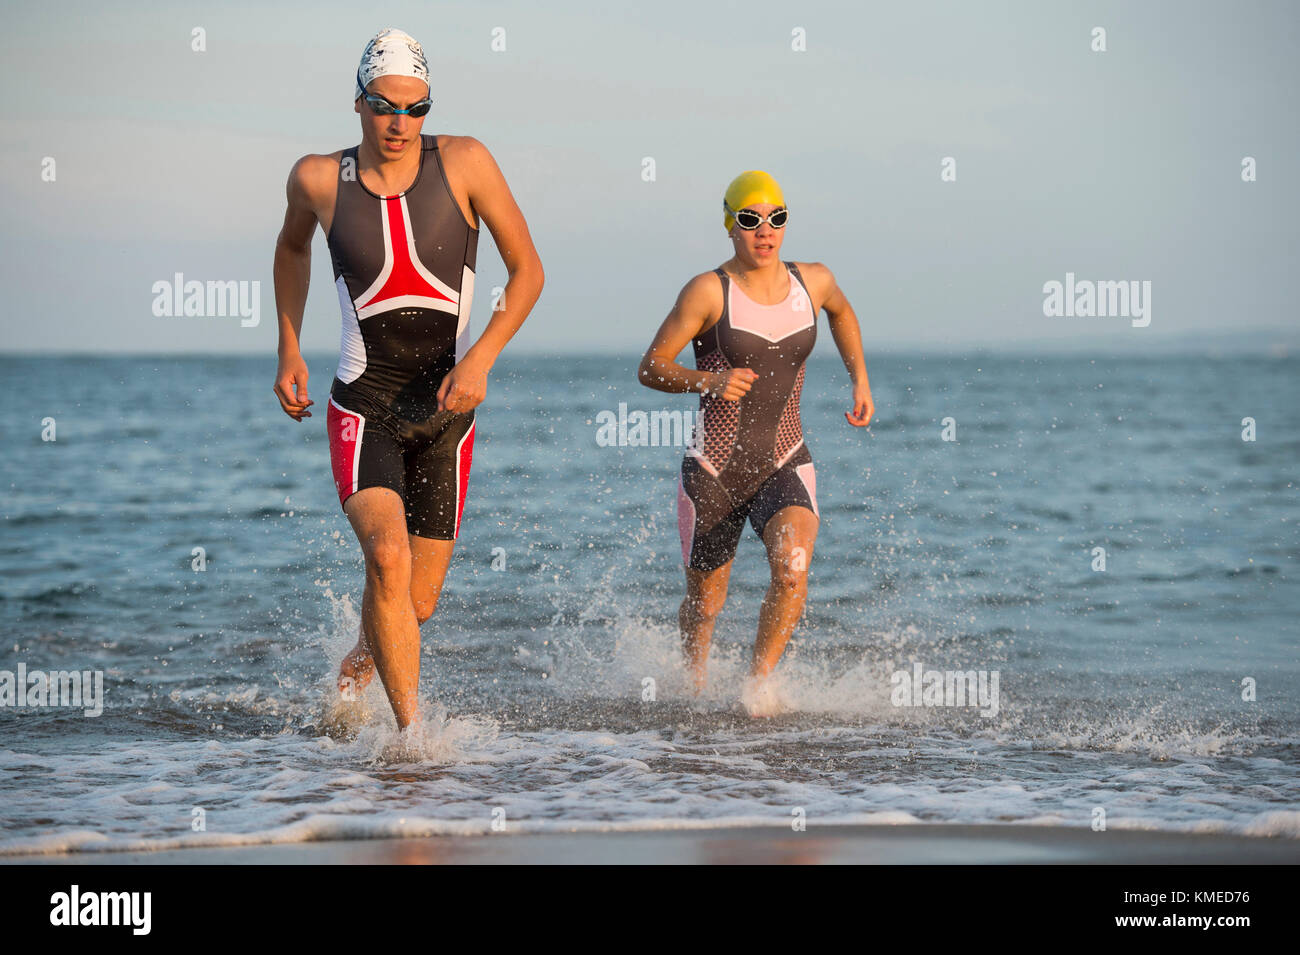 Zwei Athleten laufen aus Wasser beim Triathlon Rennen, Veracruz, Mexiko Stockfoto